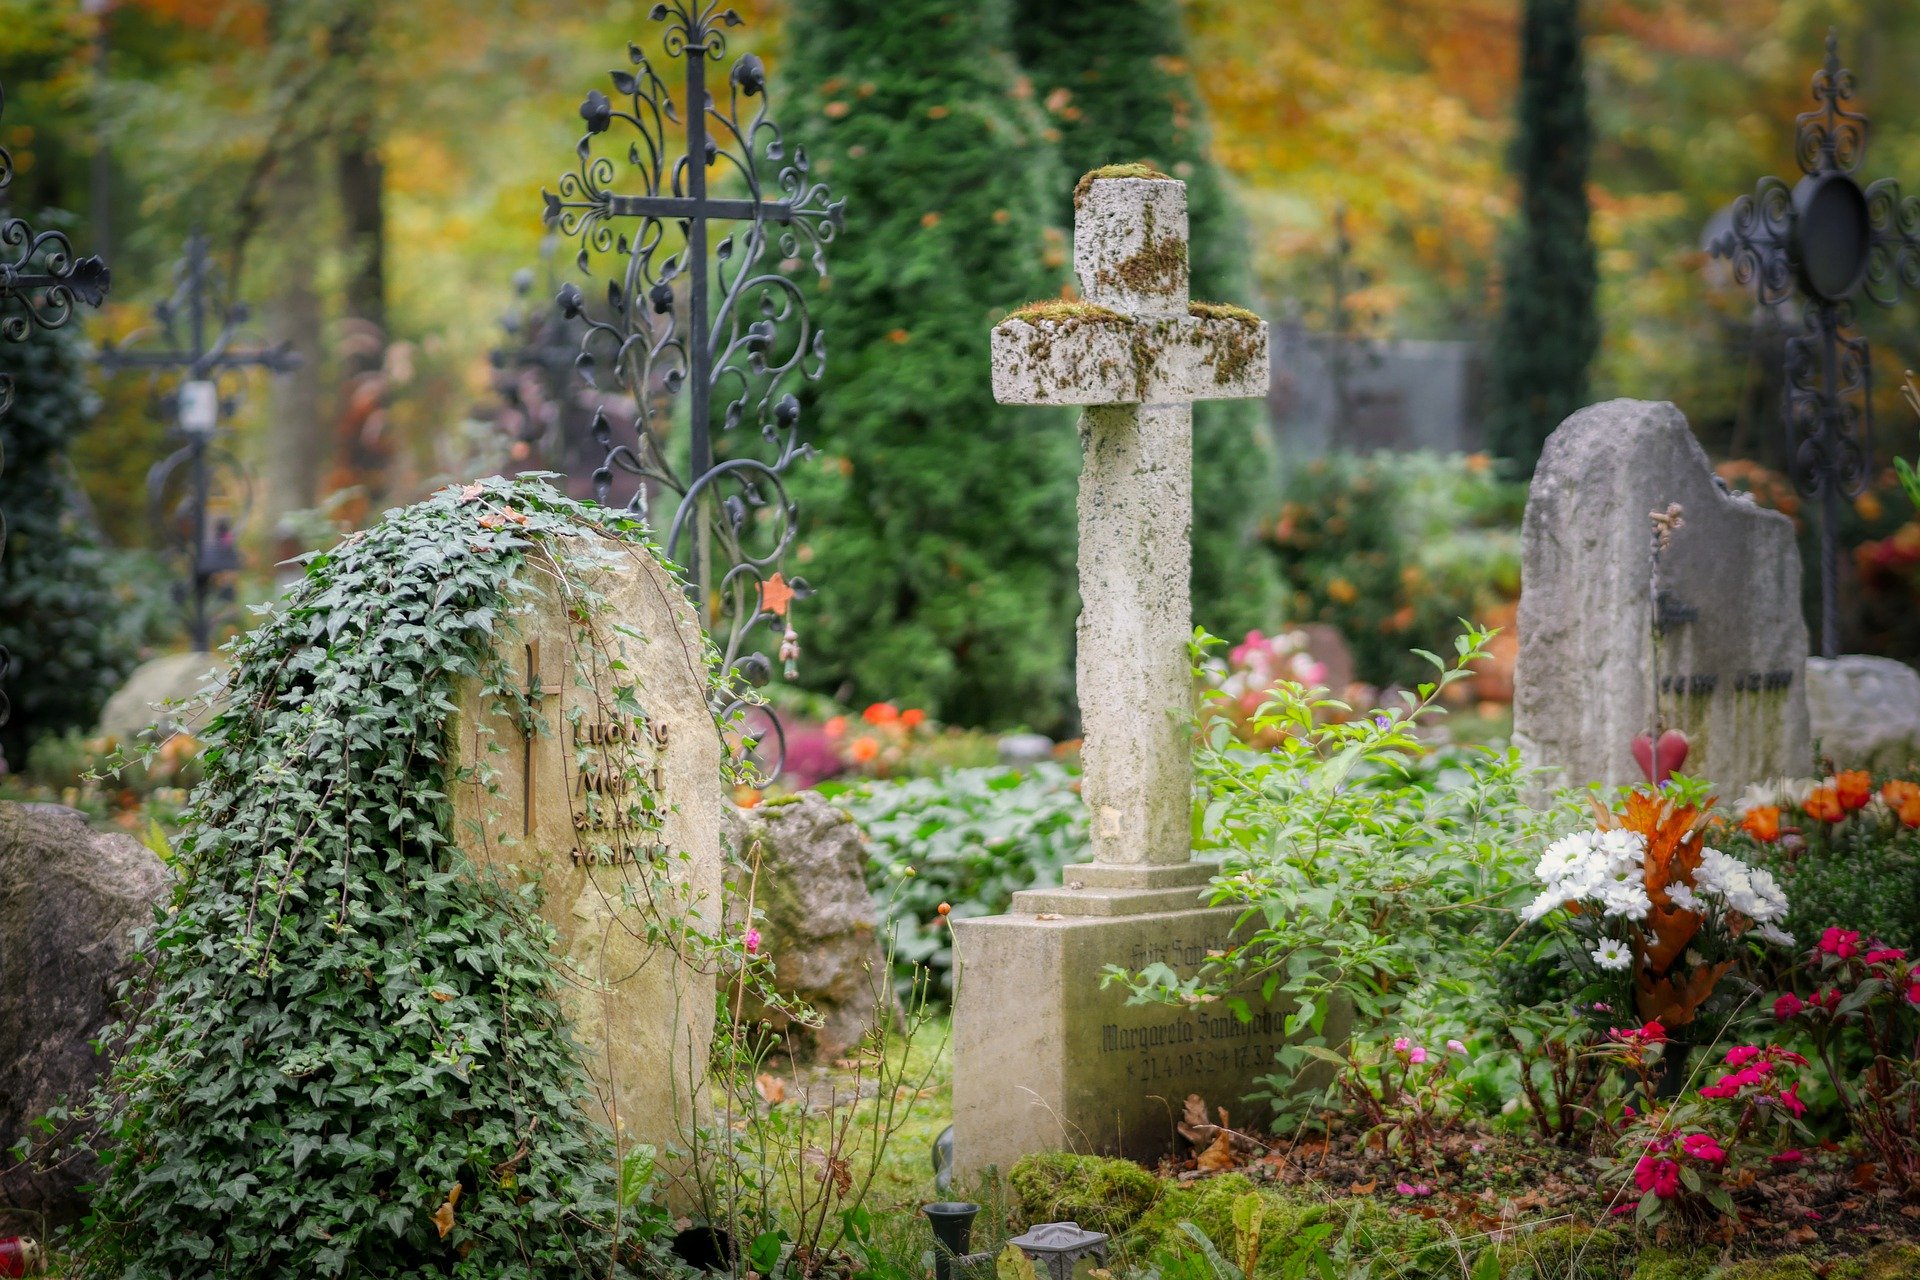 Un adulto de la tercera edad de quedó encerrado en un  cementerio, luego de visitar la tumba de su esposa. (Foto Prensa Libre: Pixabay)